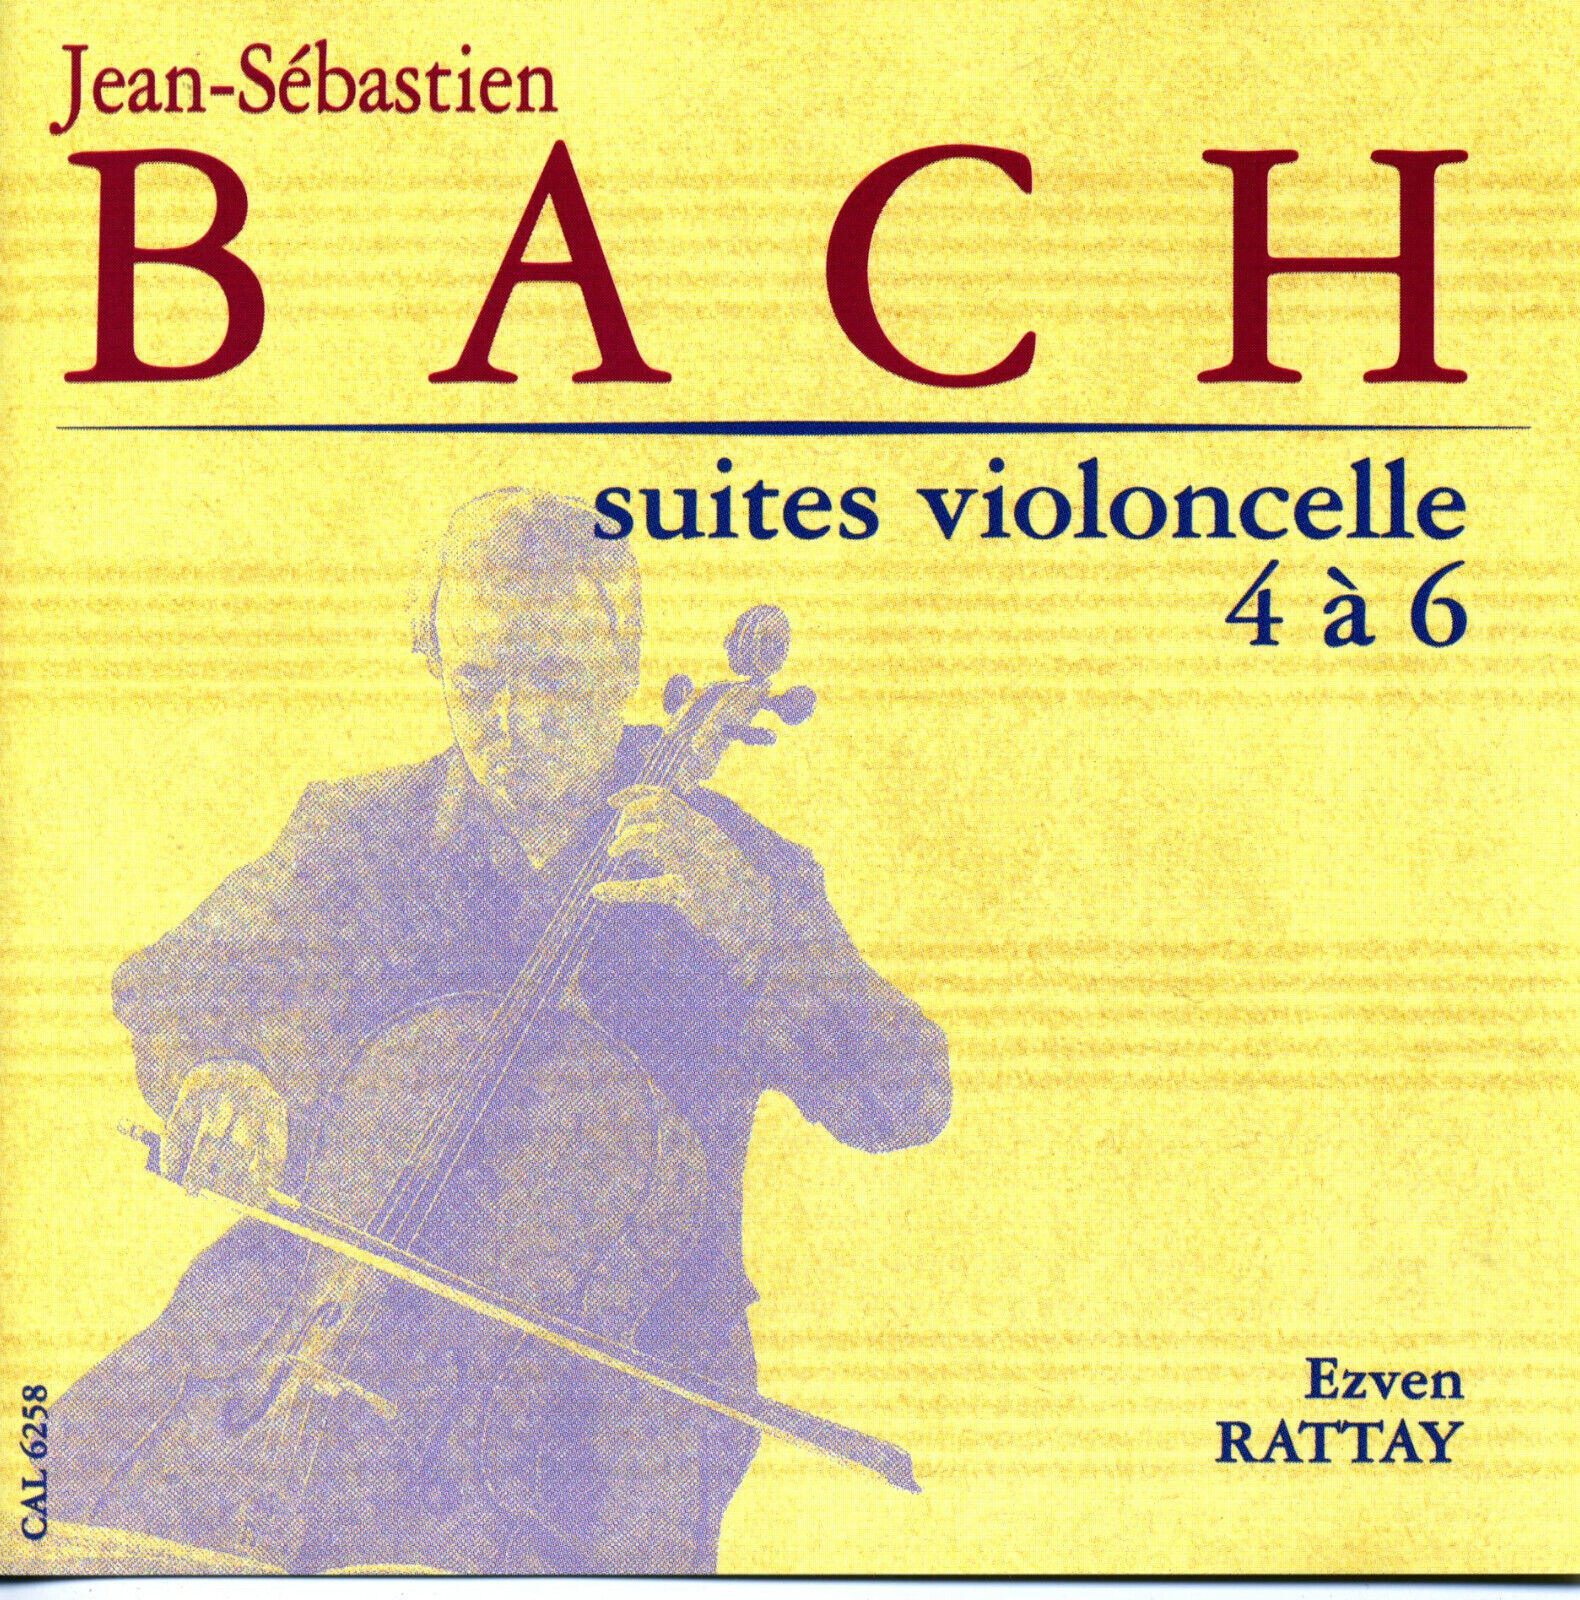 BACH Suites Violoncelle 4 à 6 Evžen RATTAY [CD] Calliope CAL 6258 Mint